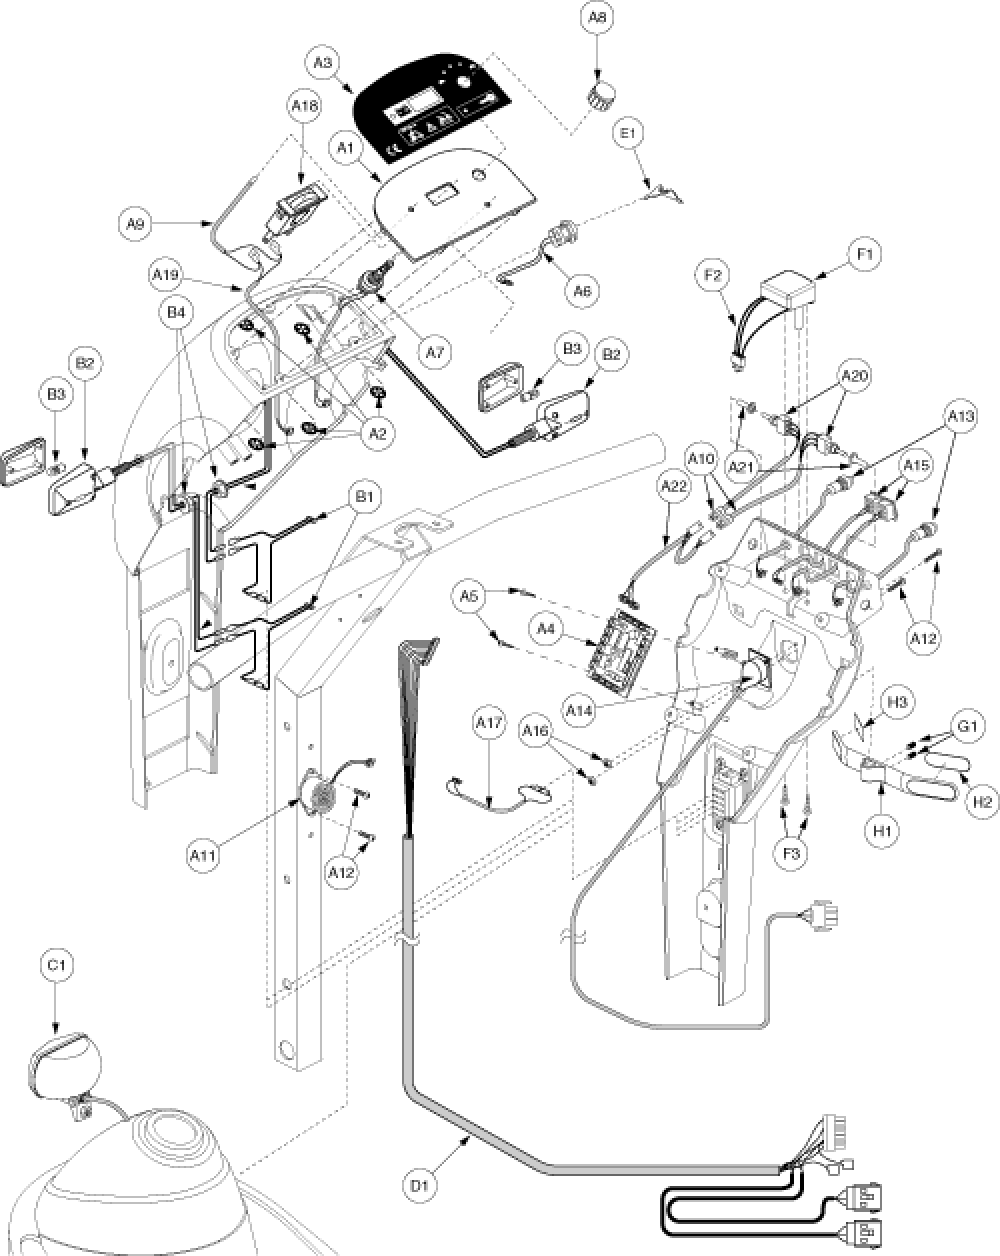 Electronics Assembly - Console Gen. 3 parts diagram